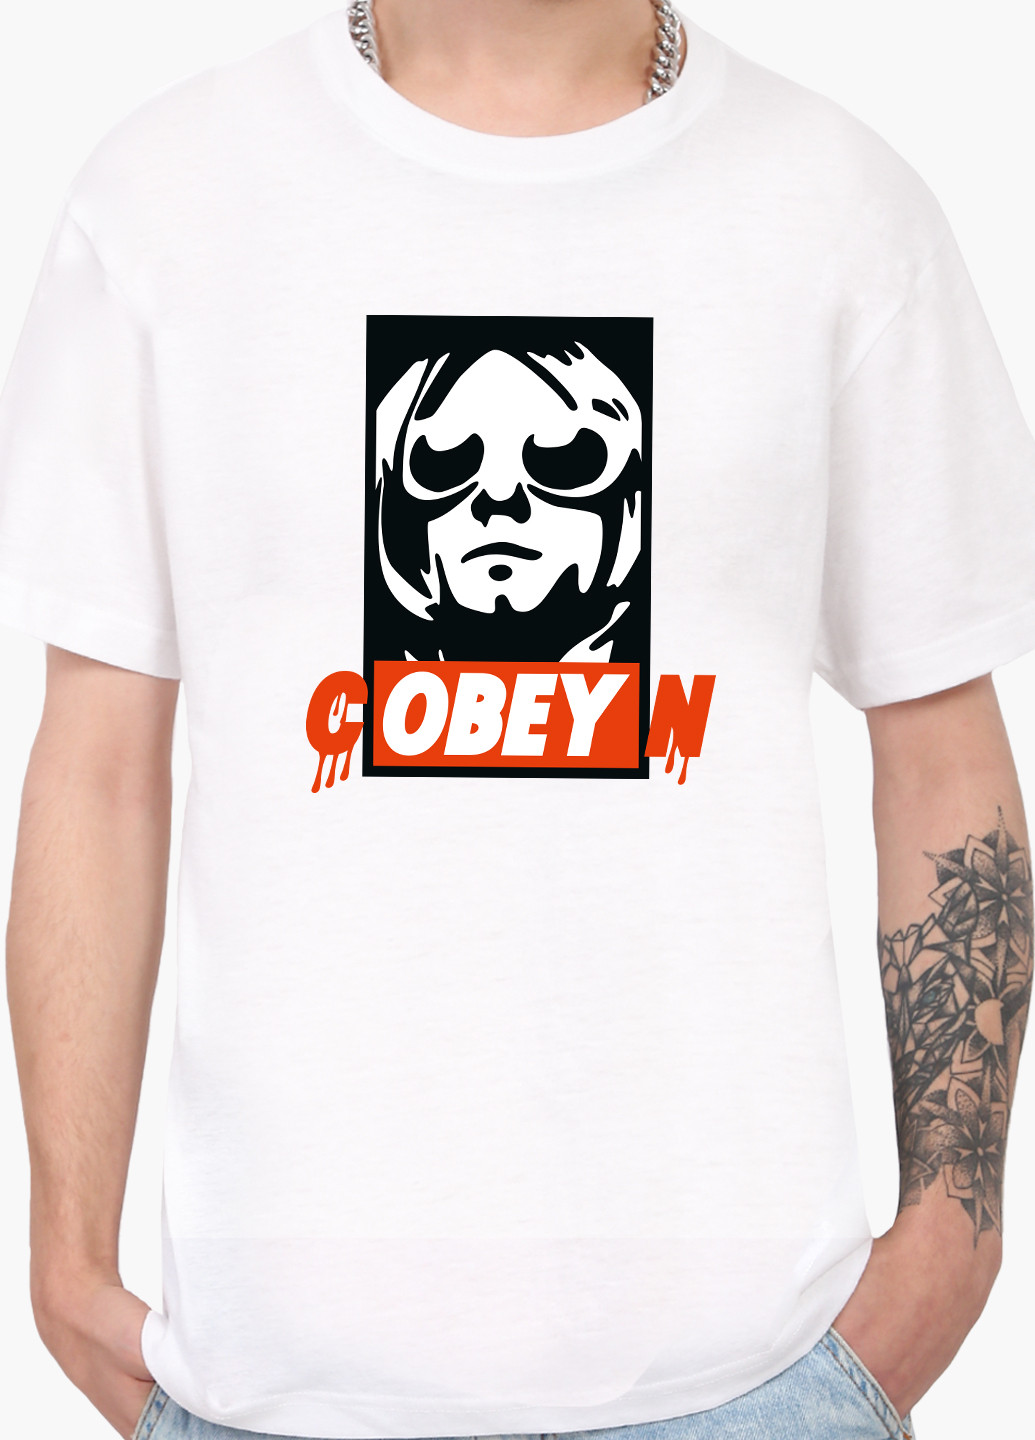 Біла футболка чоловіча курт кобейн (kurt cobain cobeyn) білий (9223-1990) xxl MobiPrint